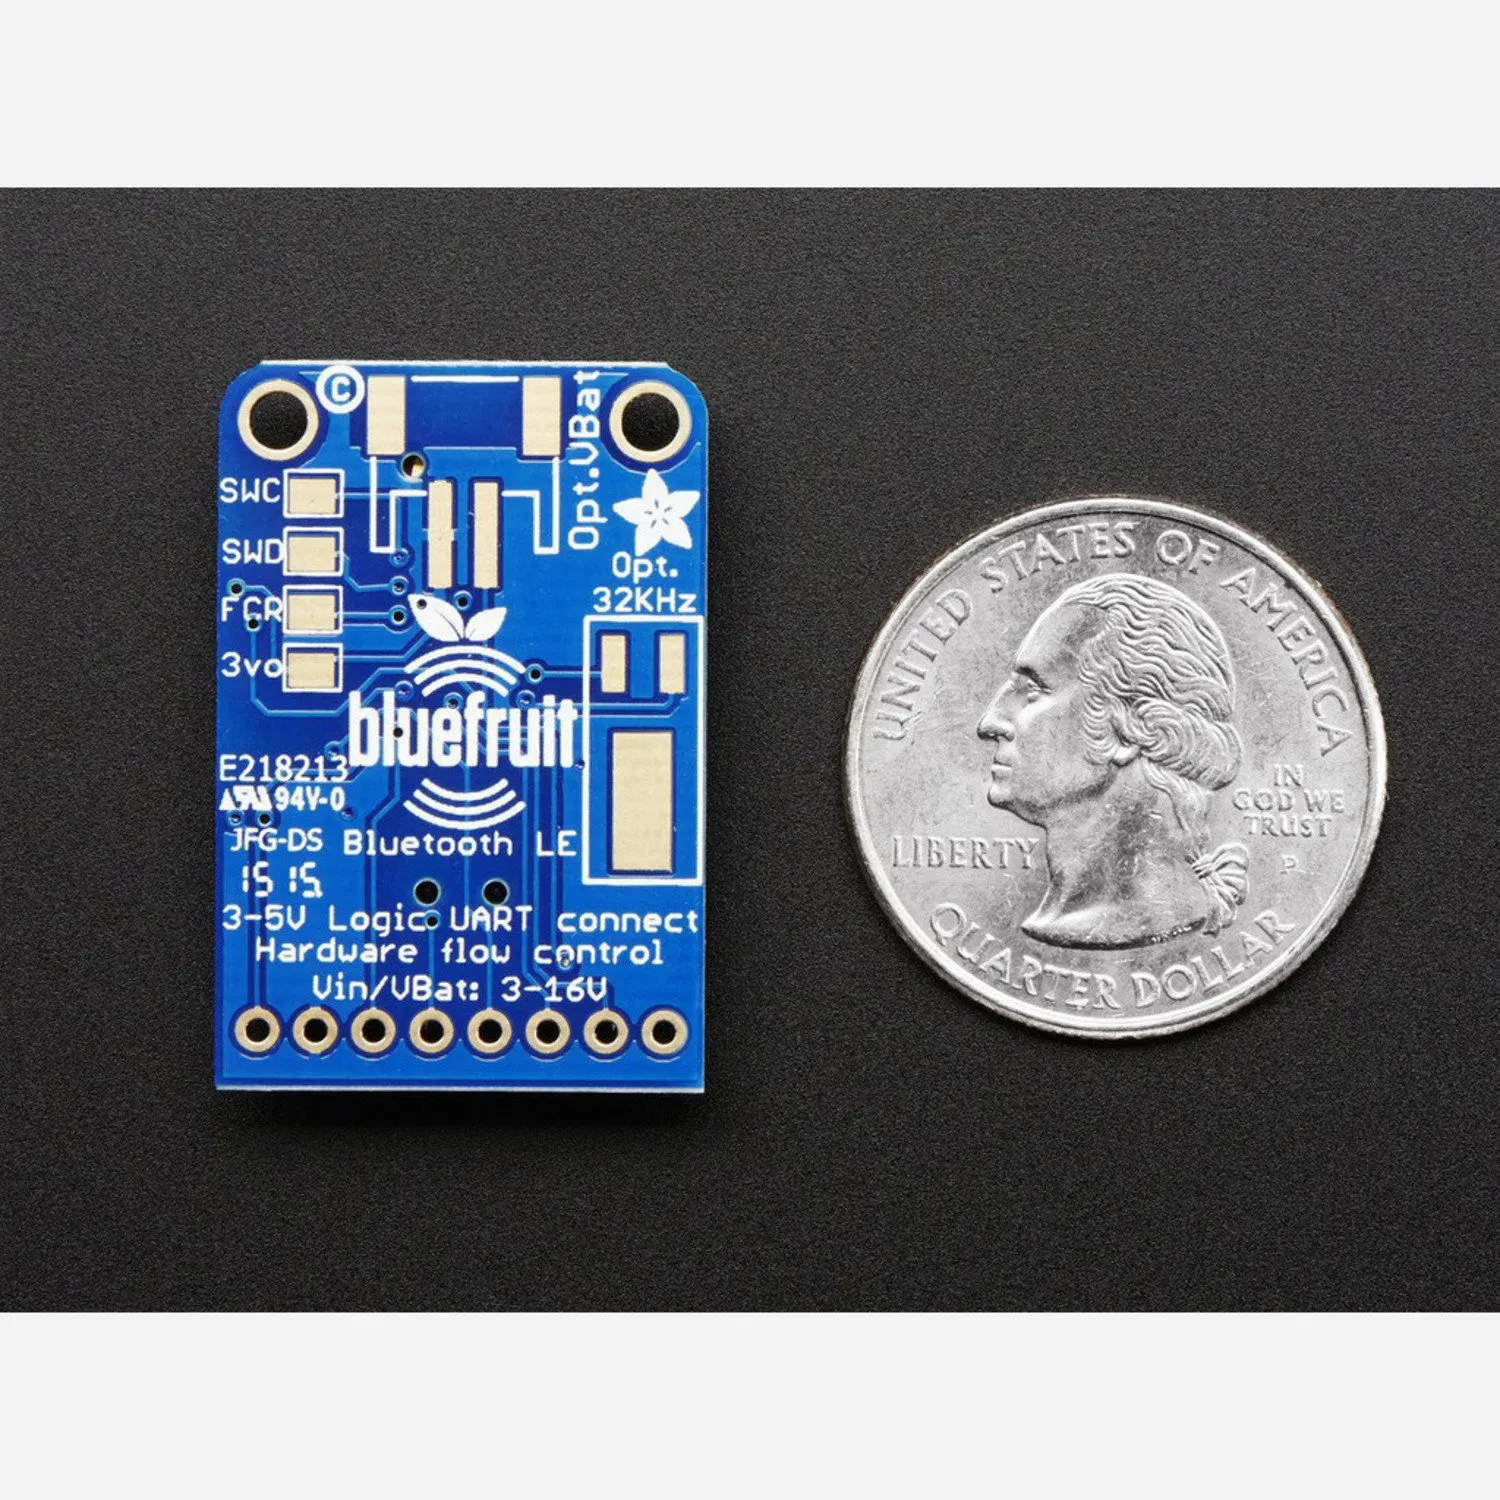 Photo of Adafruit Bluefruit LE UART Friend - Bluetooth Low Energy (BLE)